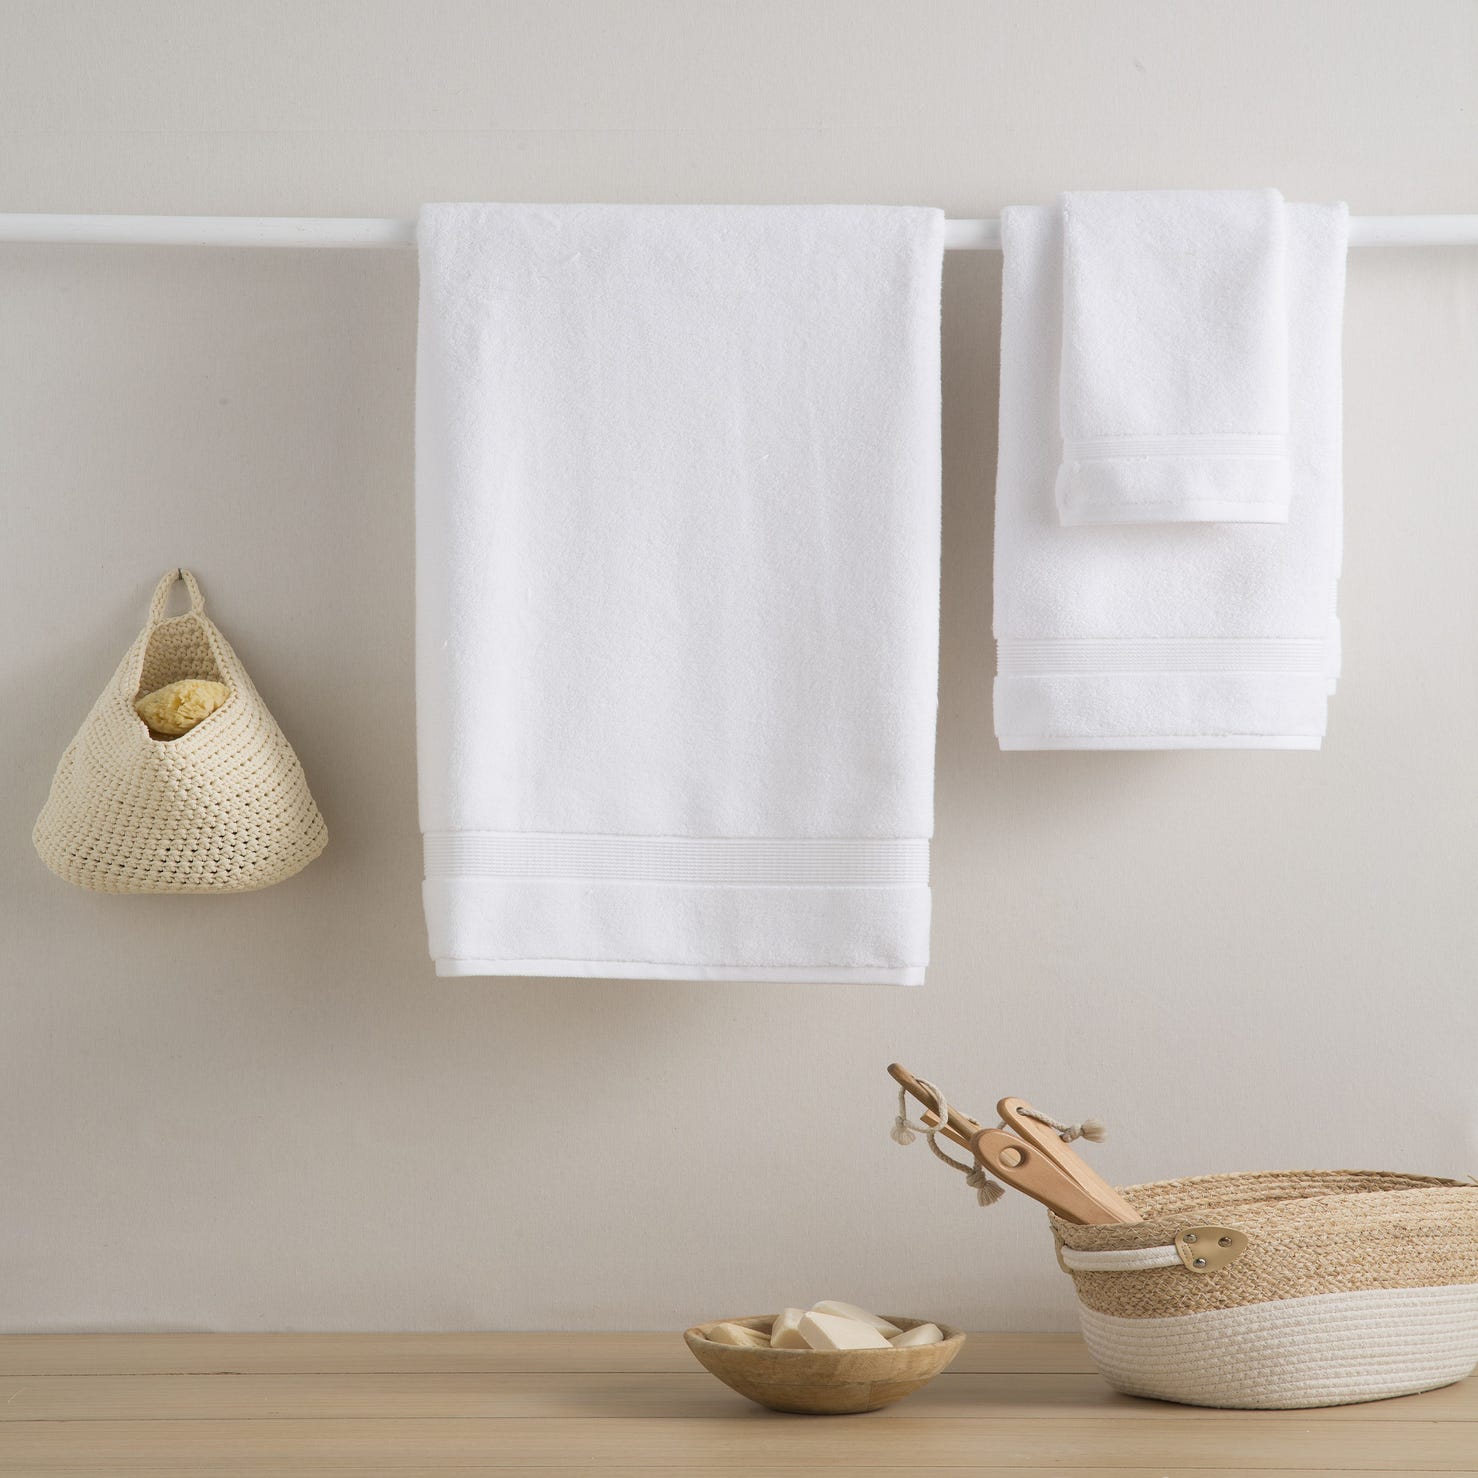 Les serviettes de table coton bio blanches Ensemble de 2